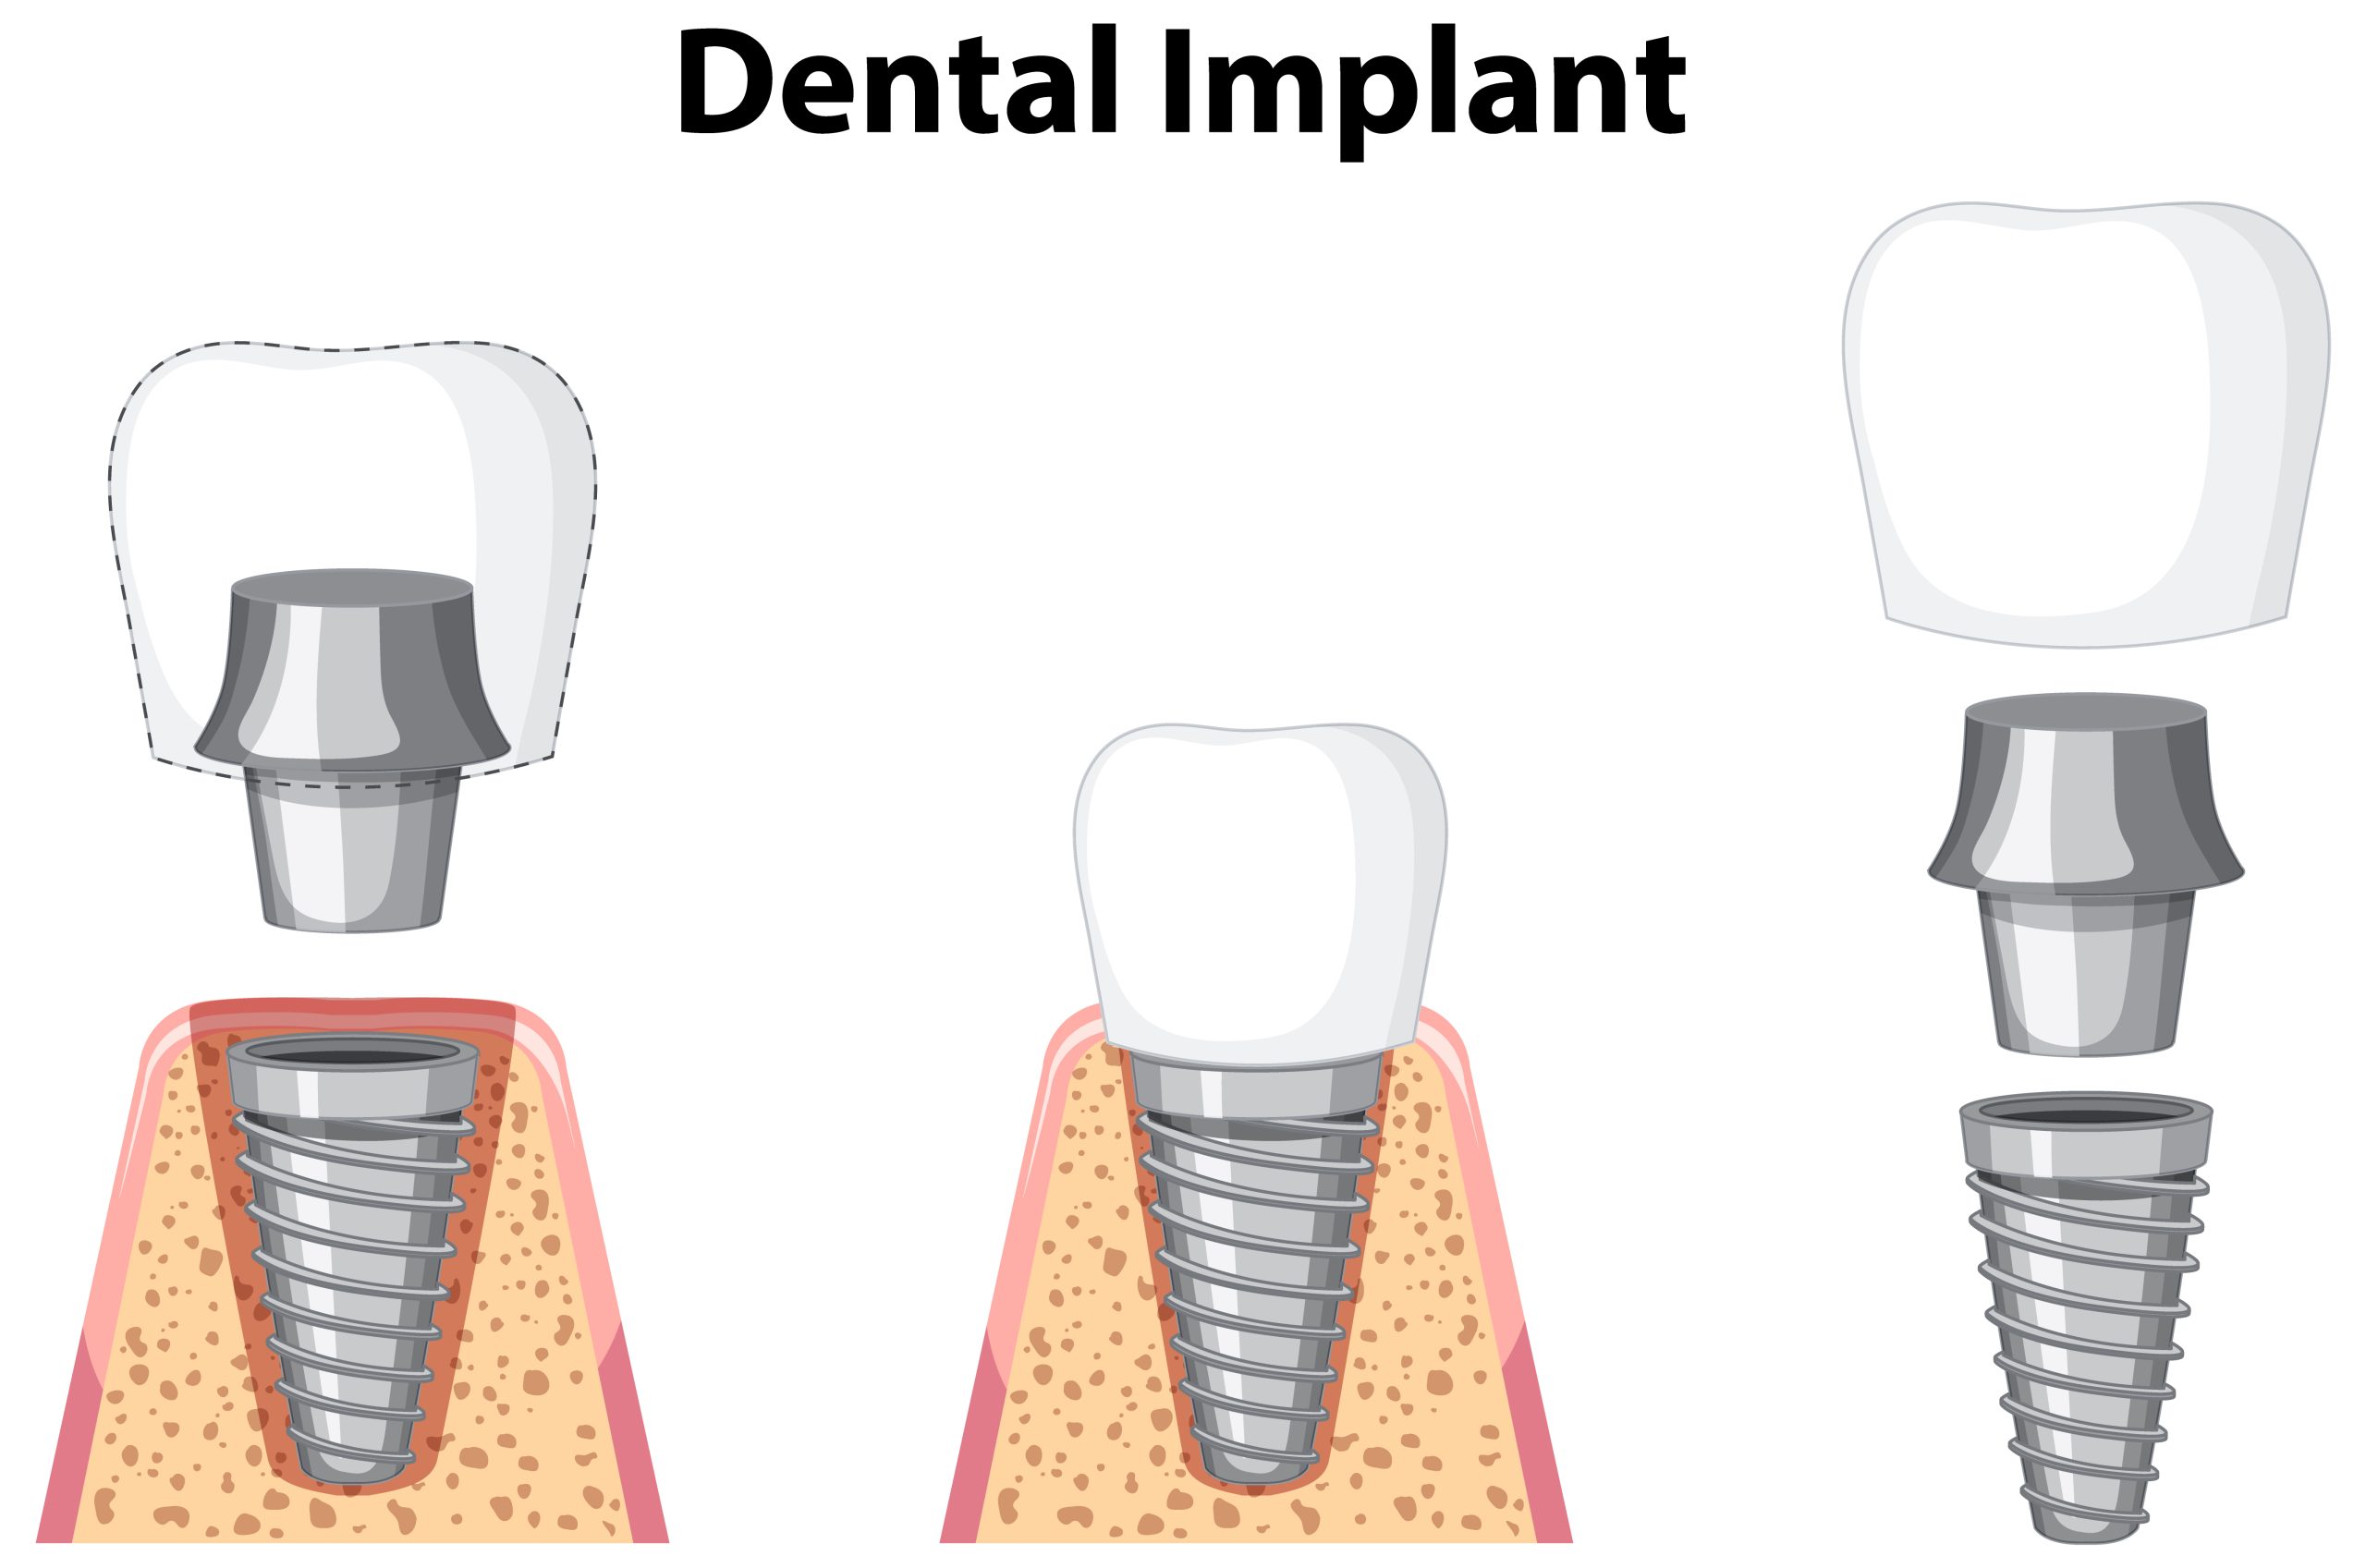 Trụ Implant